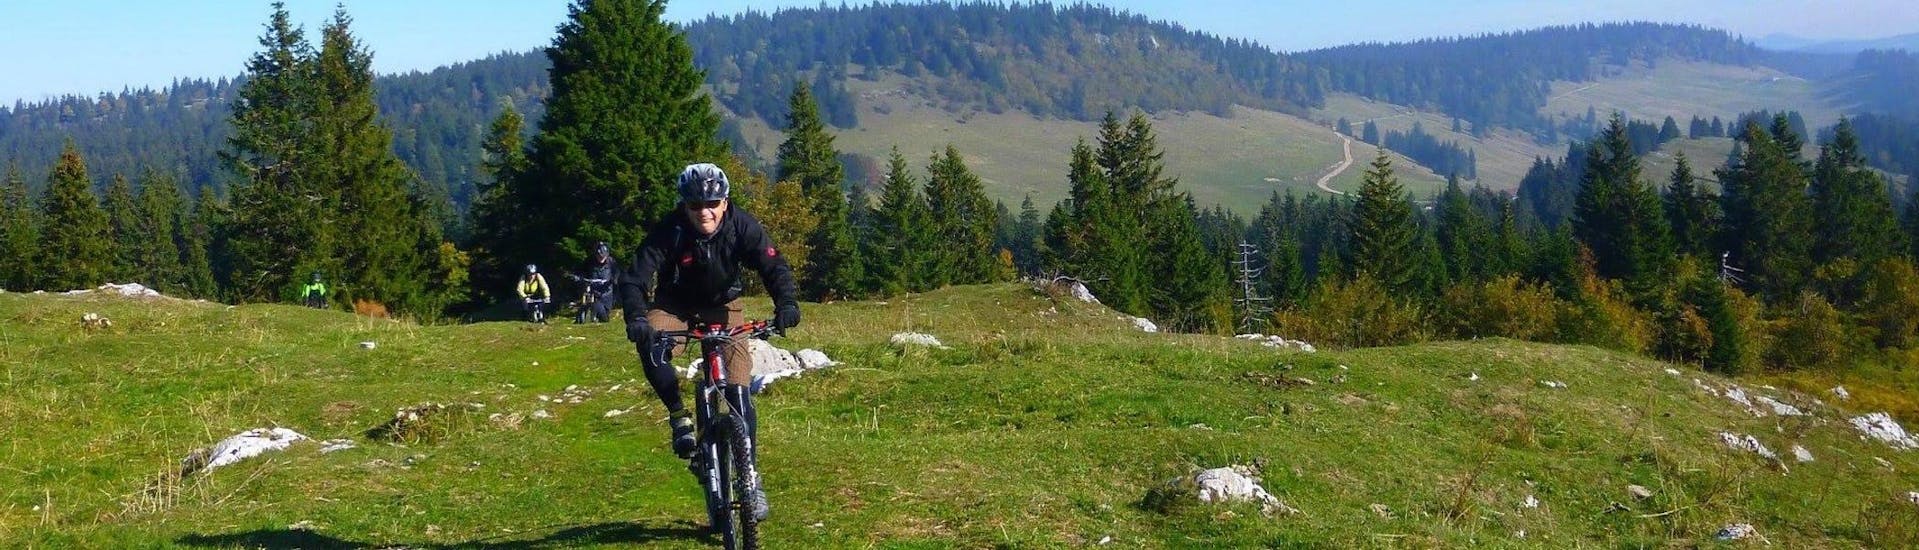 Escursione in mountain bike per ciclisti intermedi - Parc Jura vaudois.